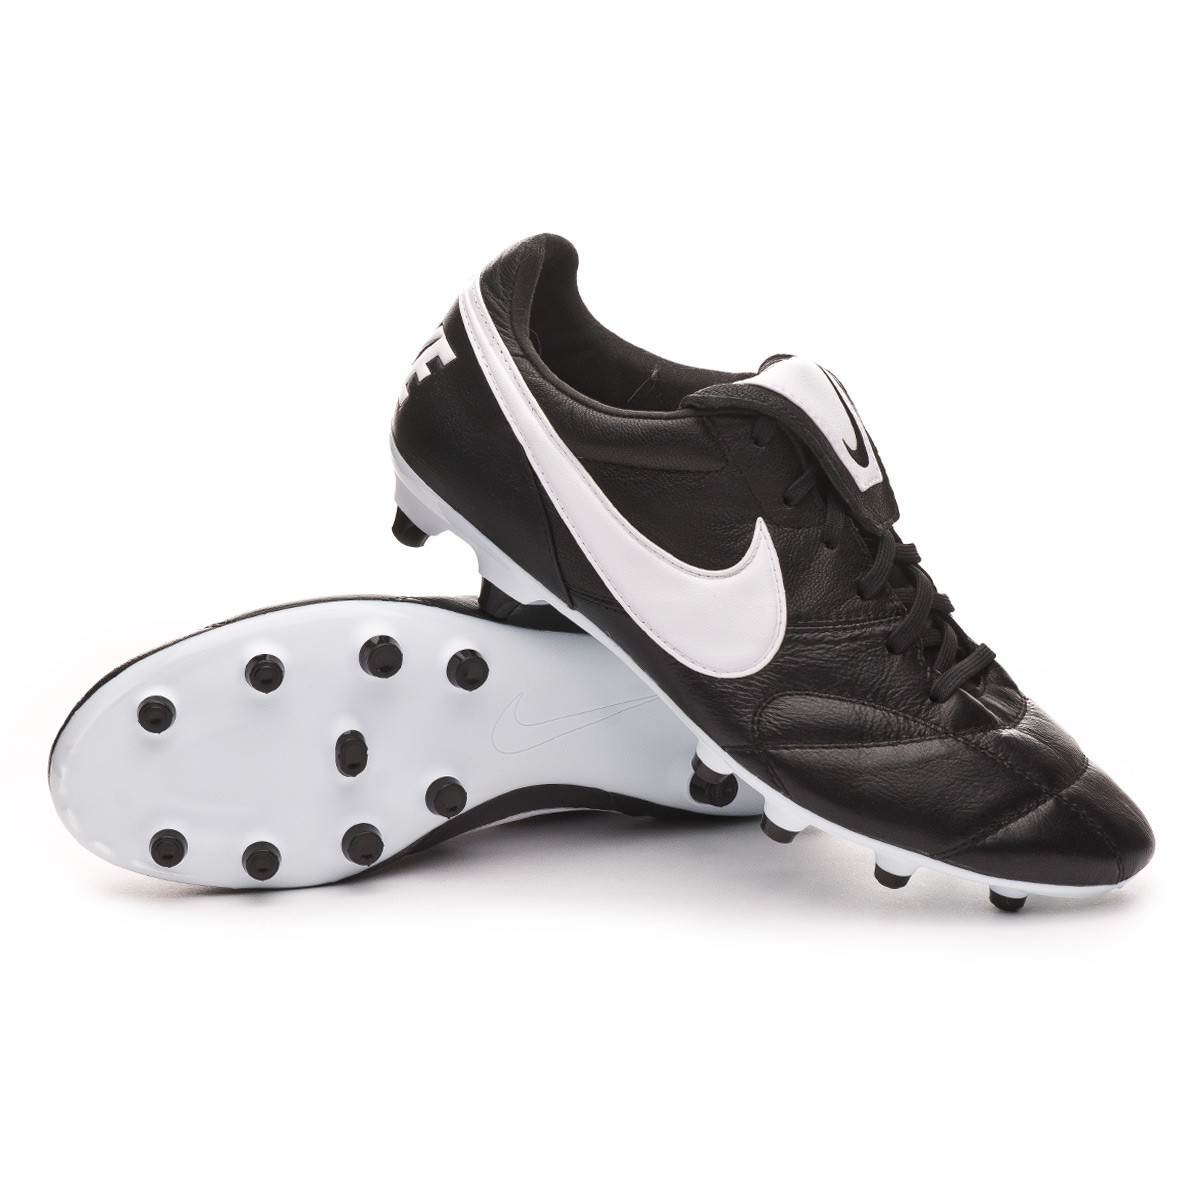 Bota de fútbol Nike Tiempo Premier II FG Black-White - Tienda de fútbol  Fútbol Emotion